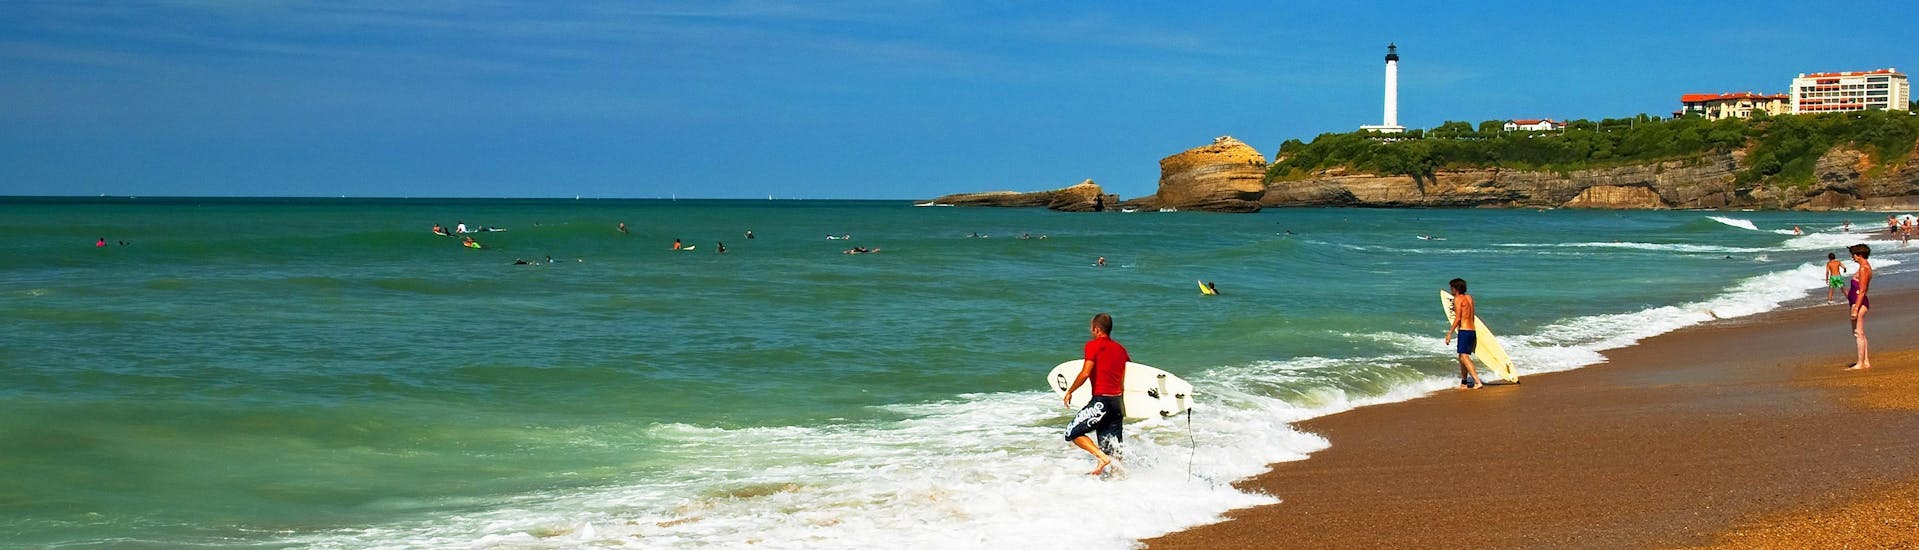 Una chica surfea en la popular zona de vacaciones de La Côte des Basques.